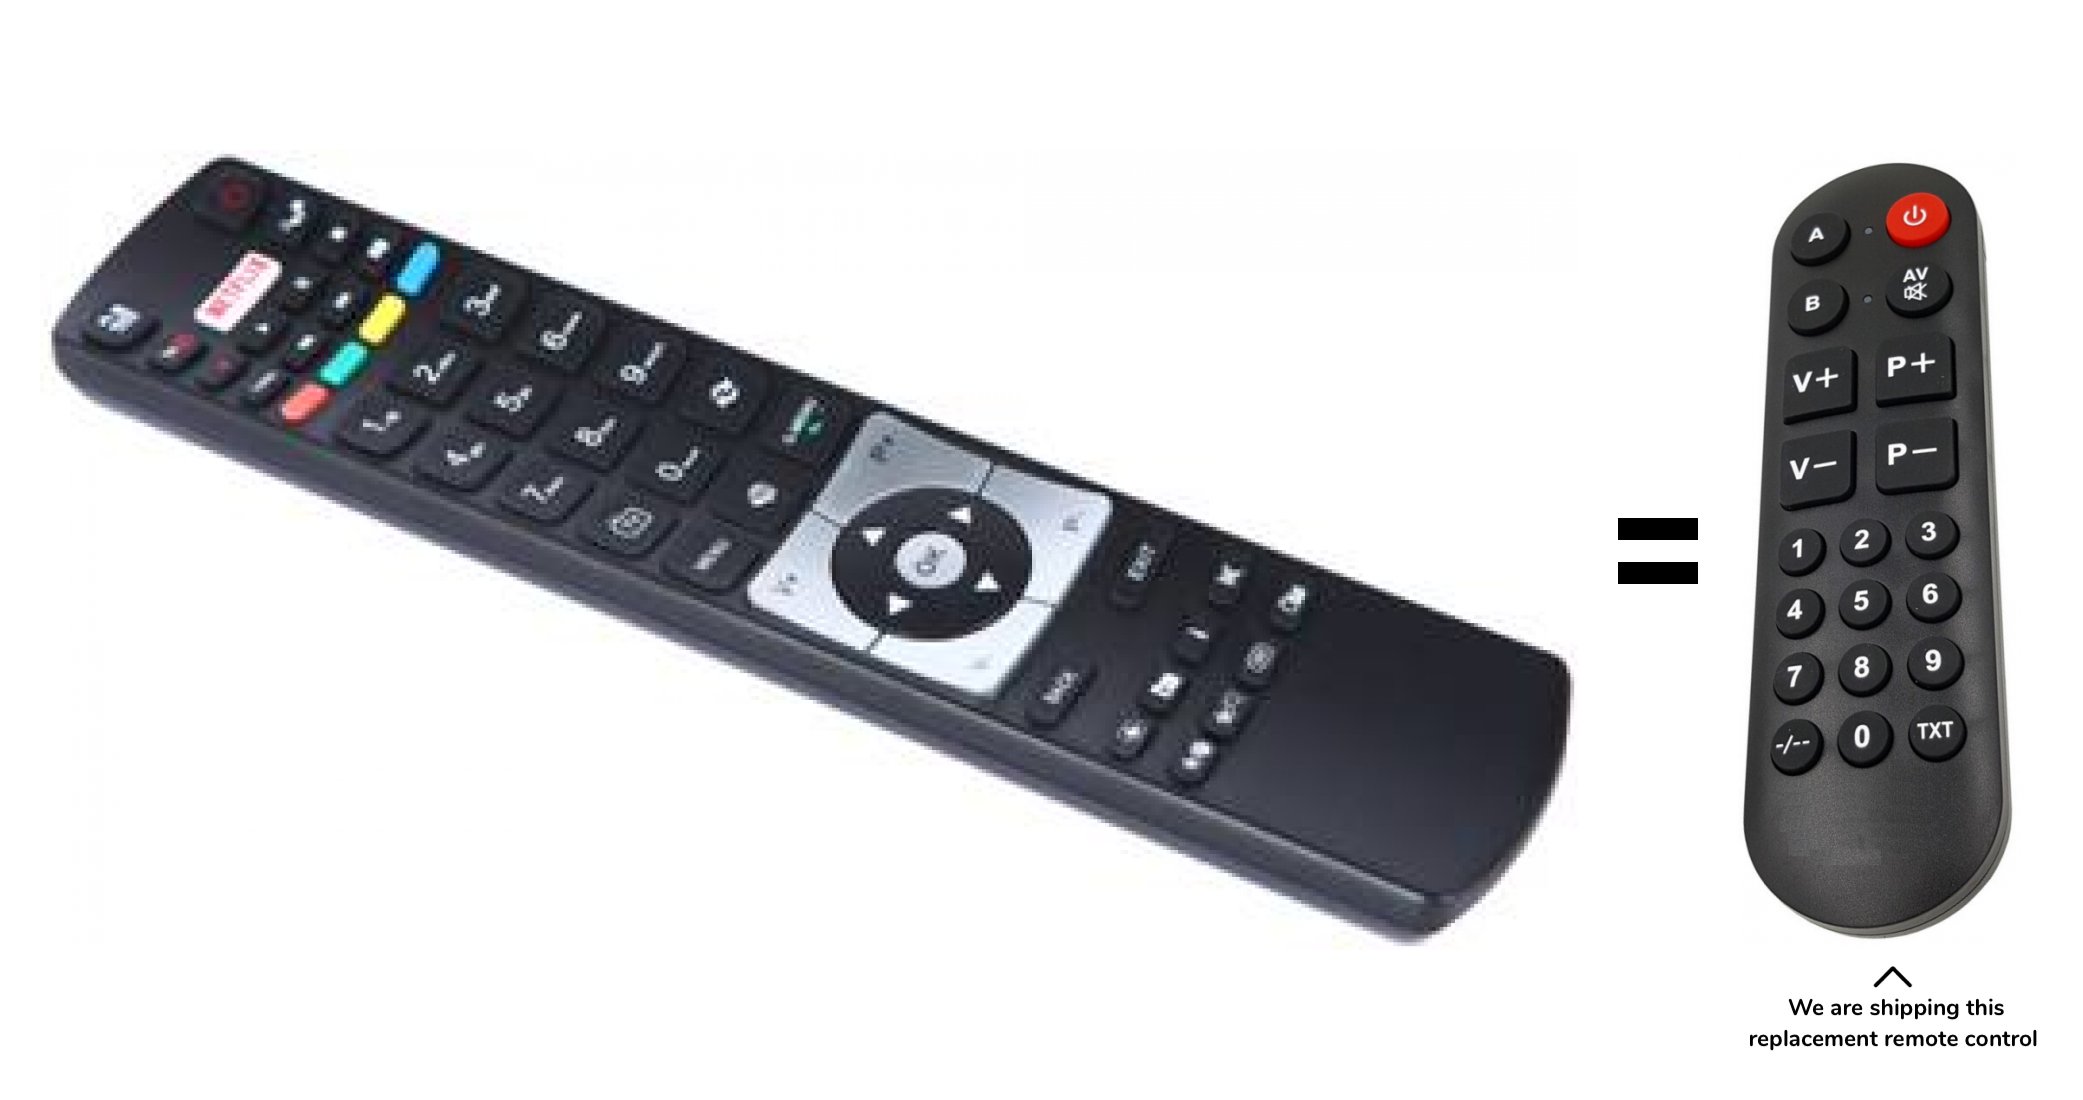 Mascom RC5118 remote control for seniors